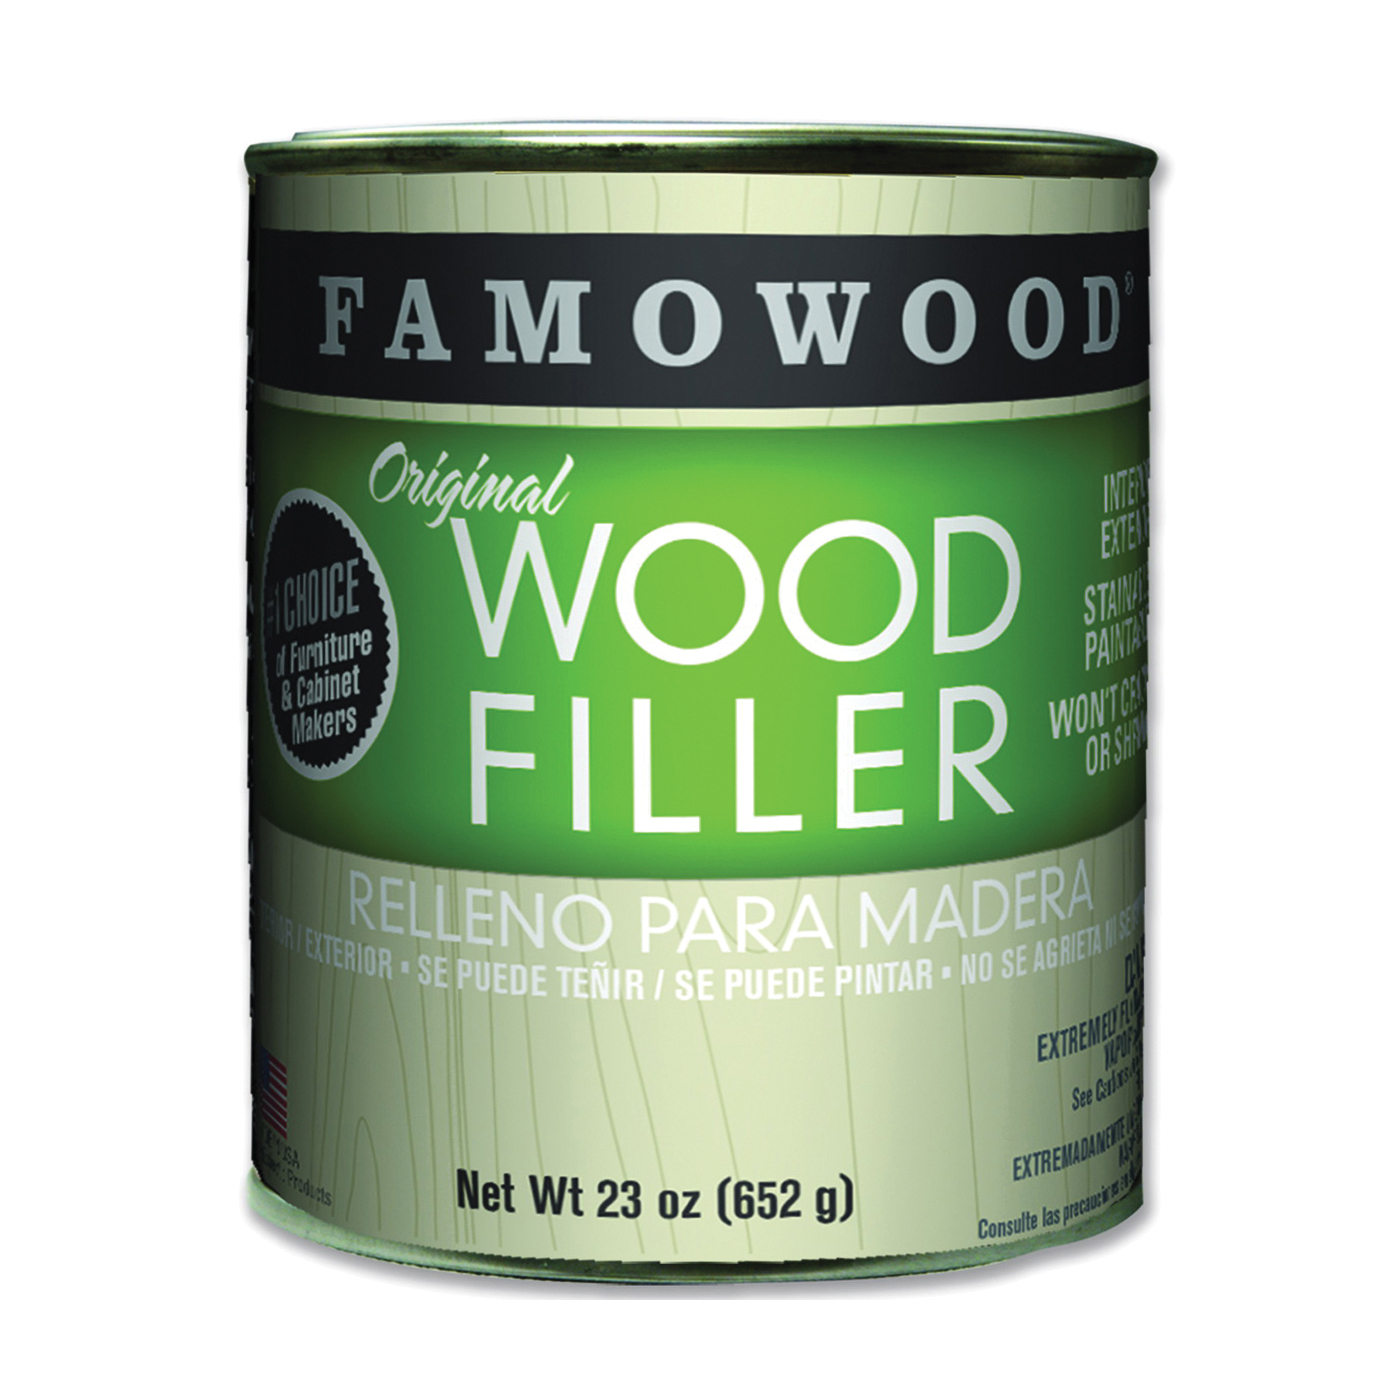 36021124 Original Wood Filler, Liquid, Paste, Maple, 23 oz, Can